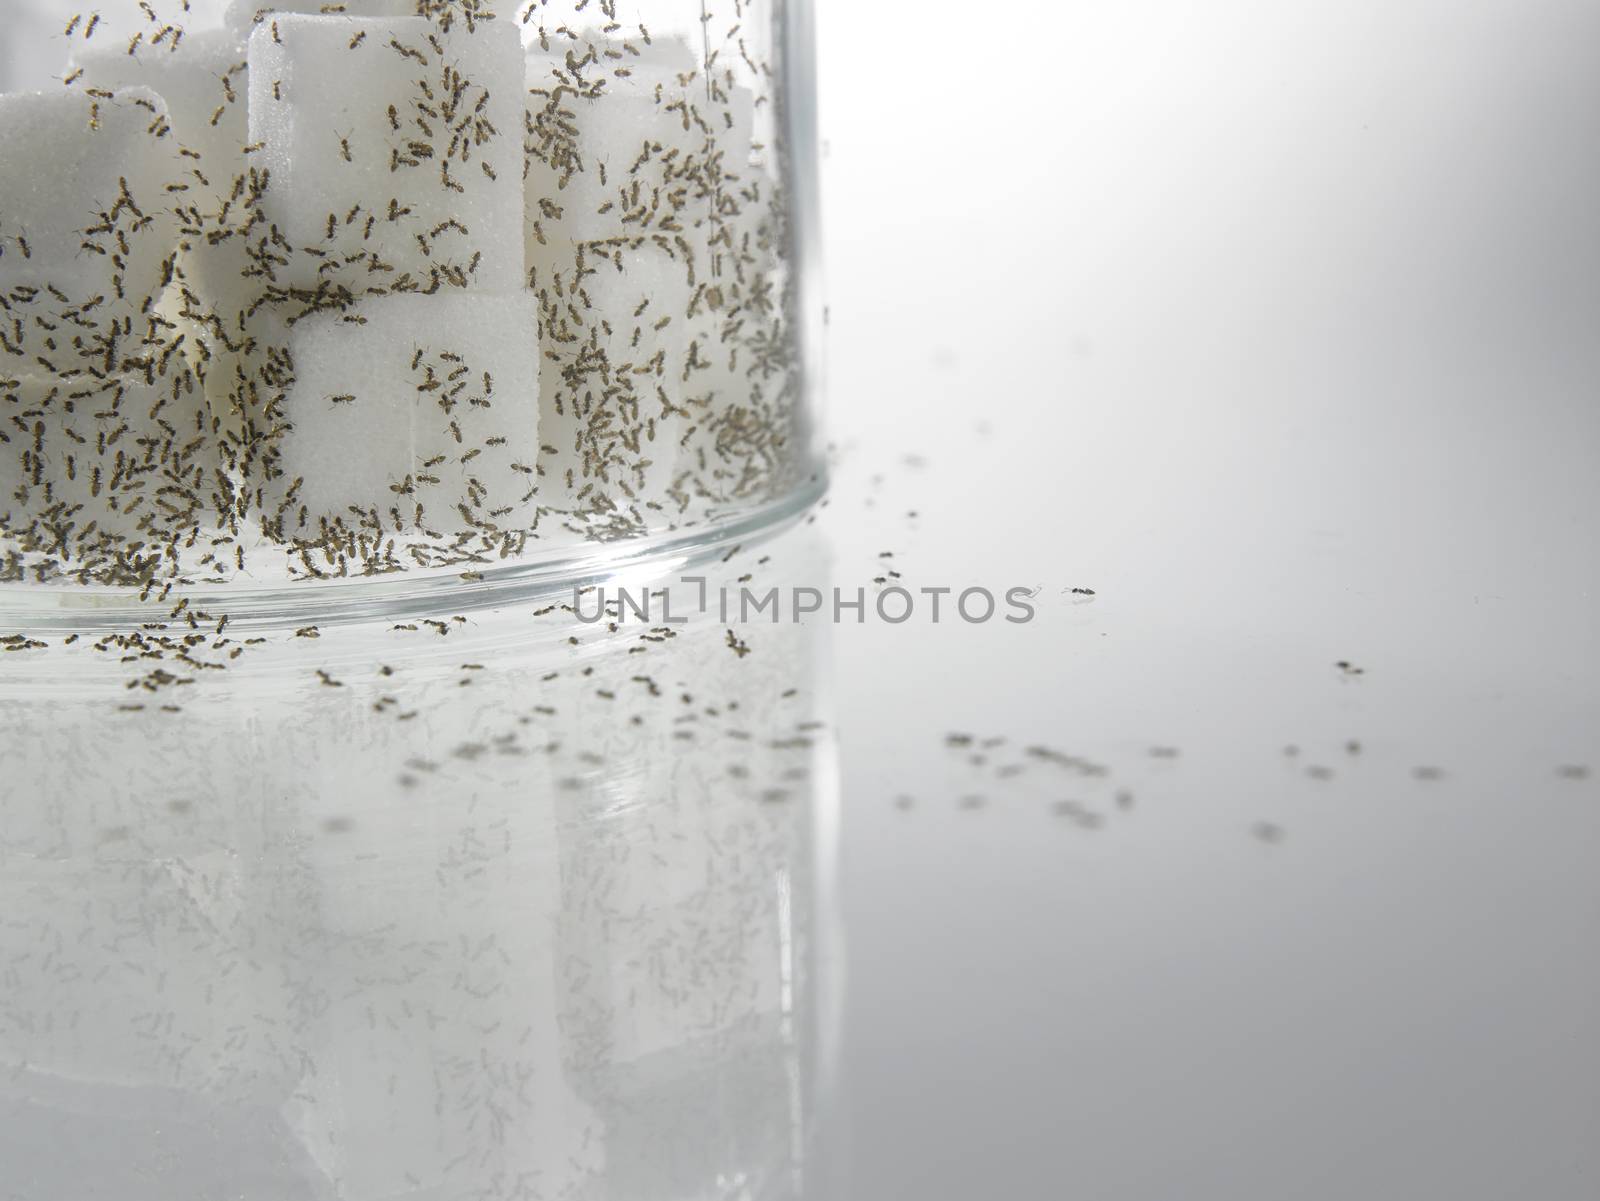 sugar with ants by eskaylim